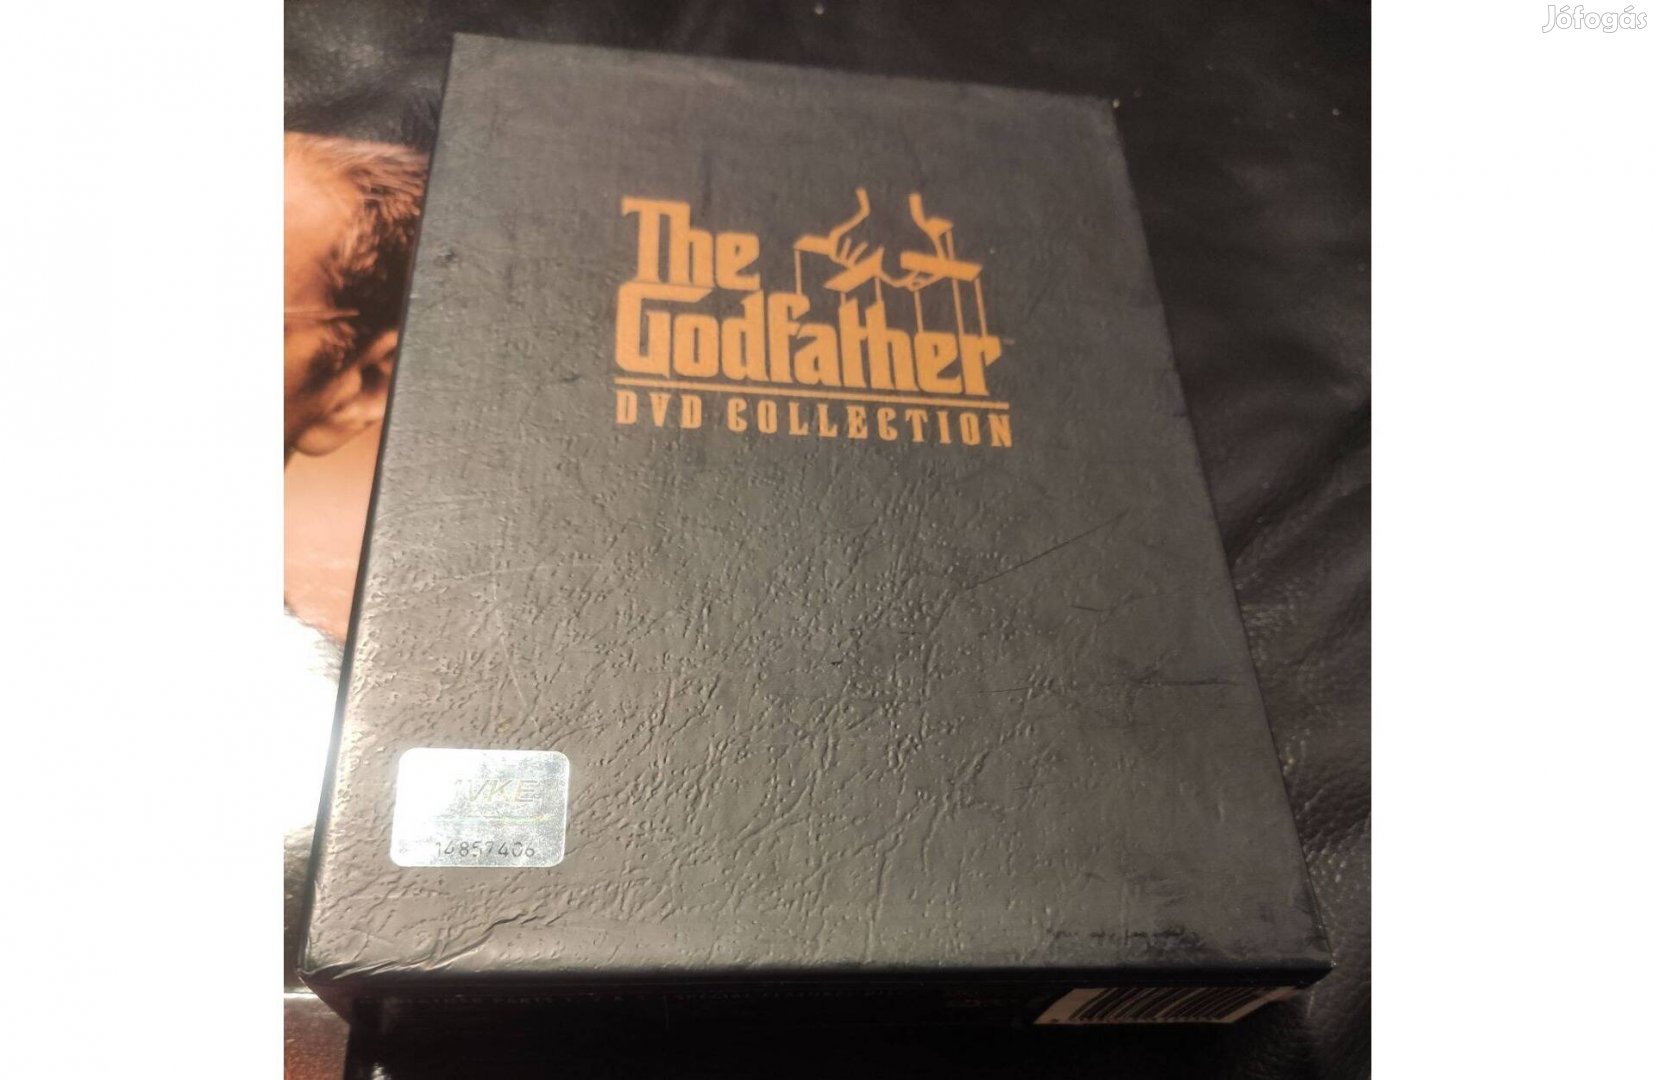 The Godfather - A keresztapa DVD Collection -díszdobozos